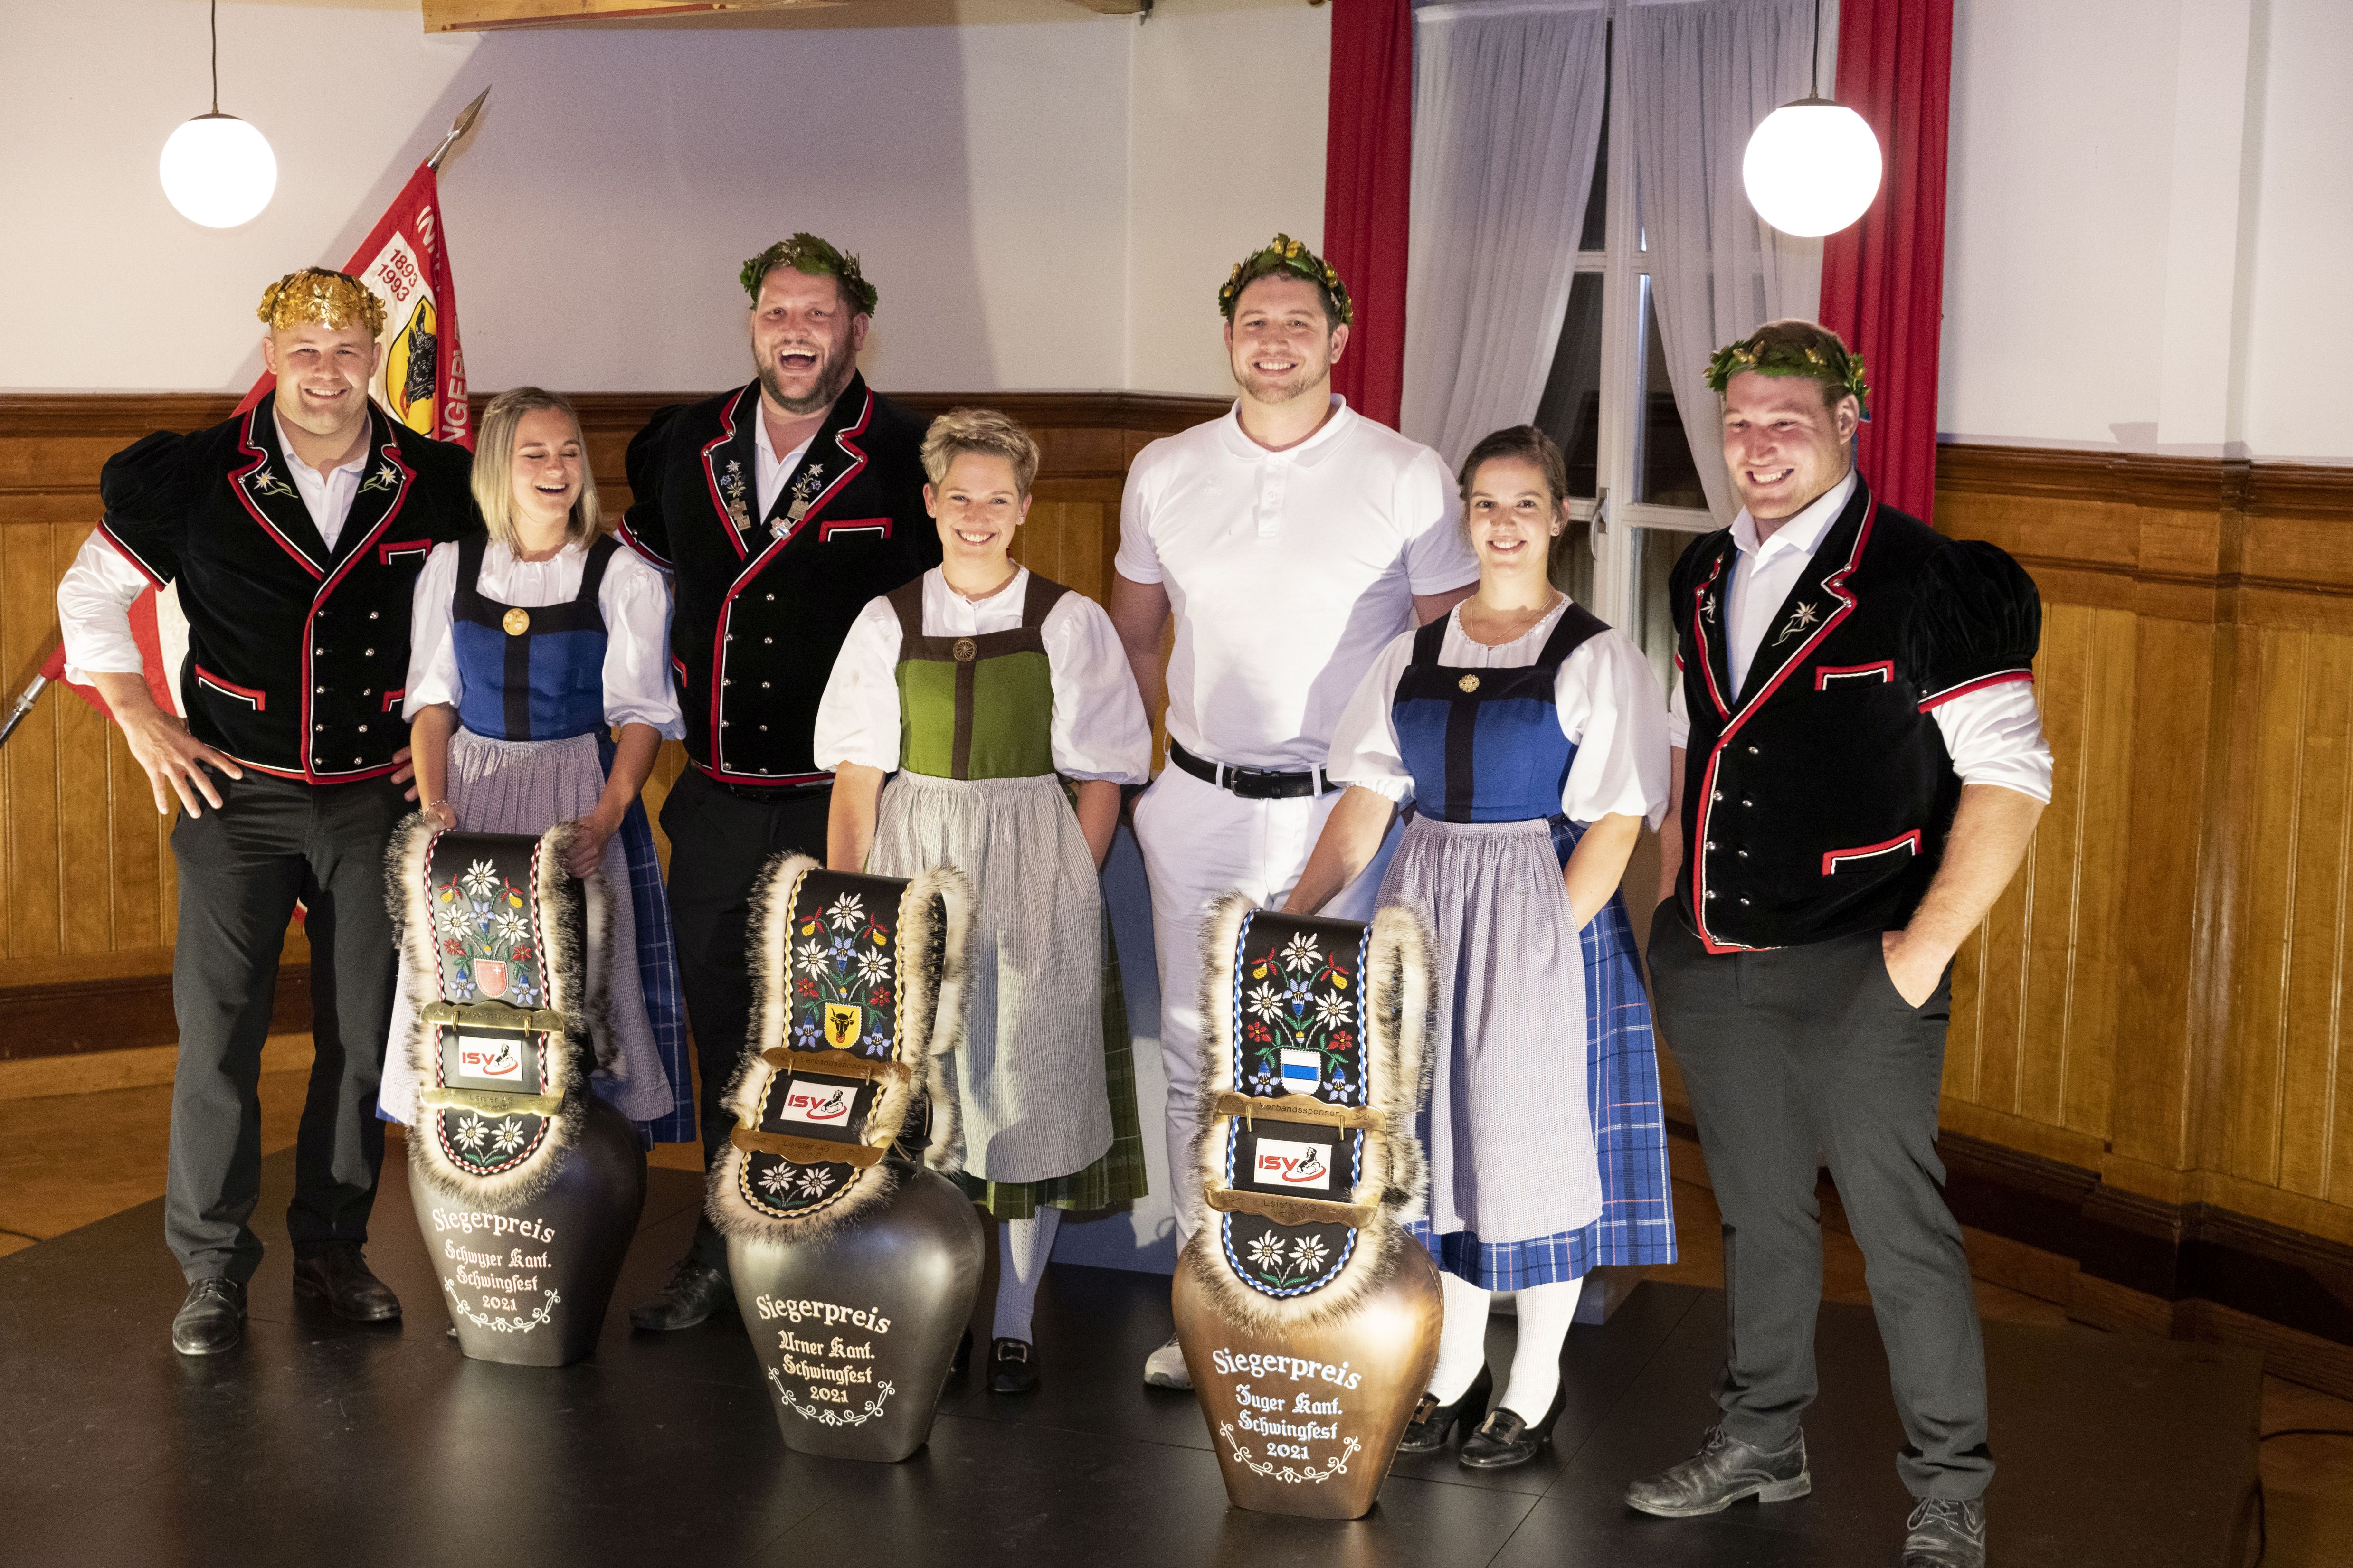 Die Kranzfestsieger im ISV Gebiet 2021 v.l.n.r. Christian Schuler, Sven Schurtenberger, Marcel Bieri und Joel Wicki